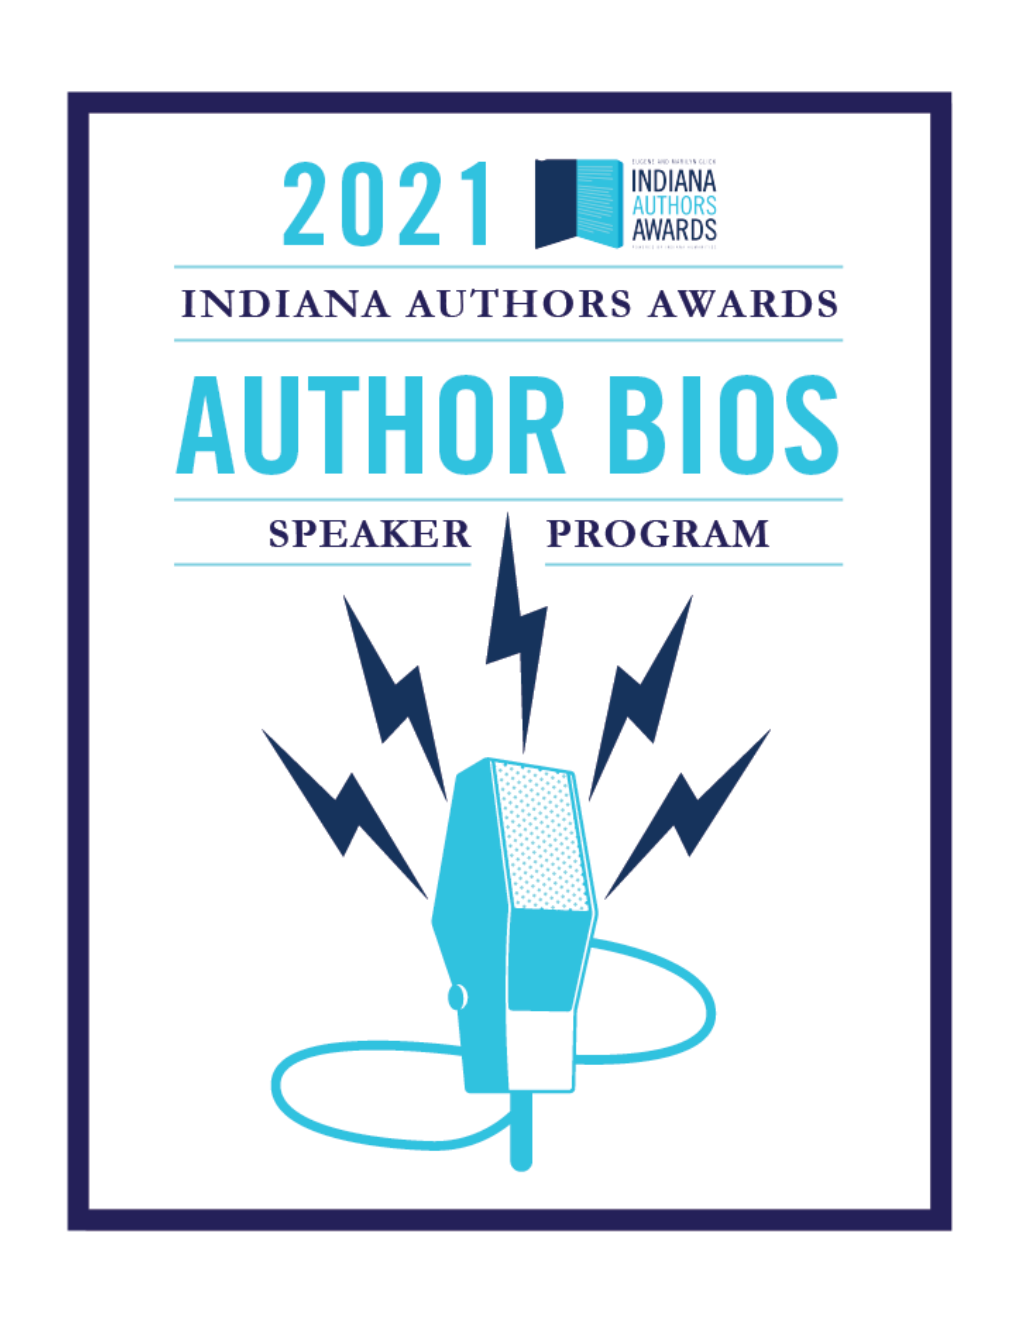 Indiana-Authors-Awards-Speaker